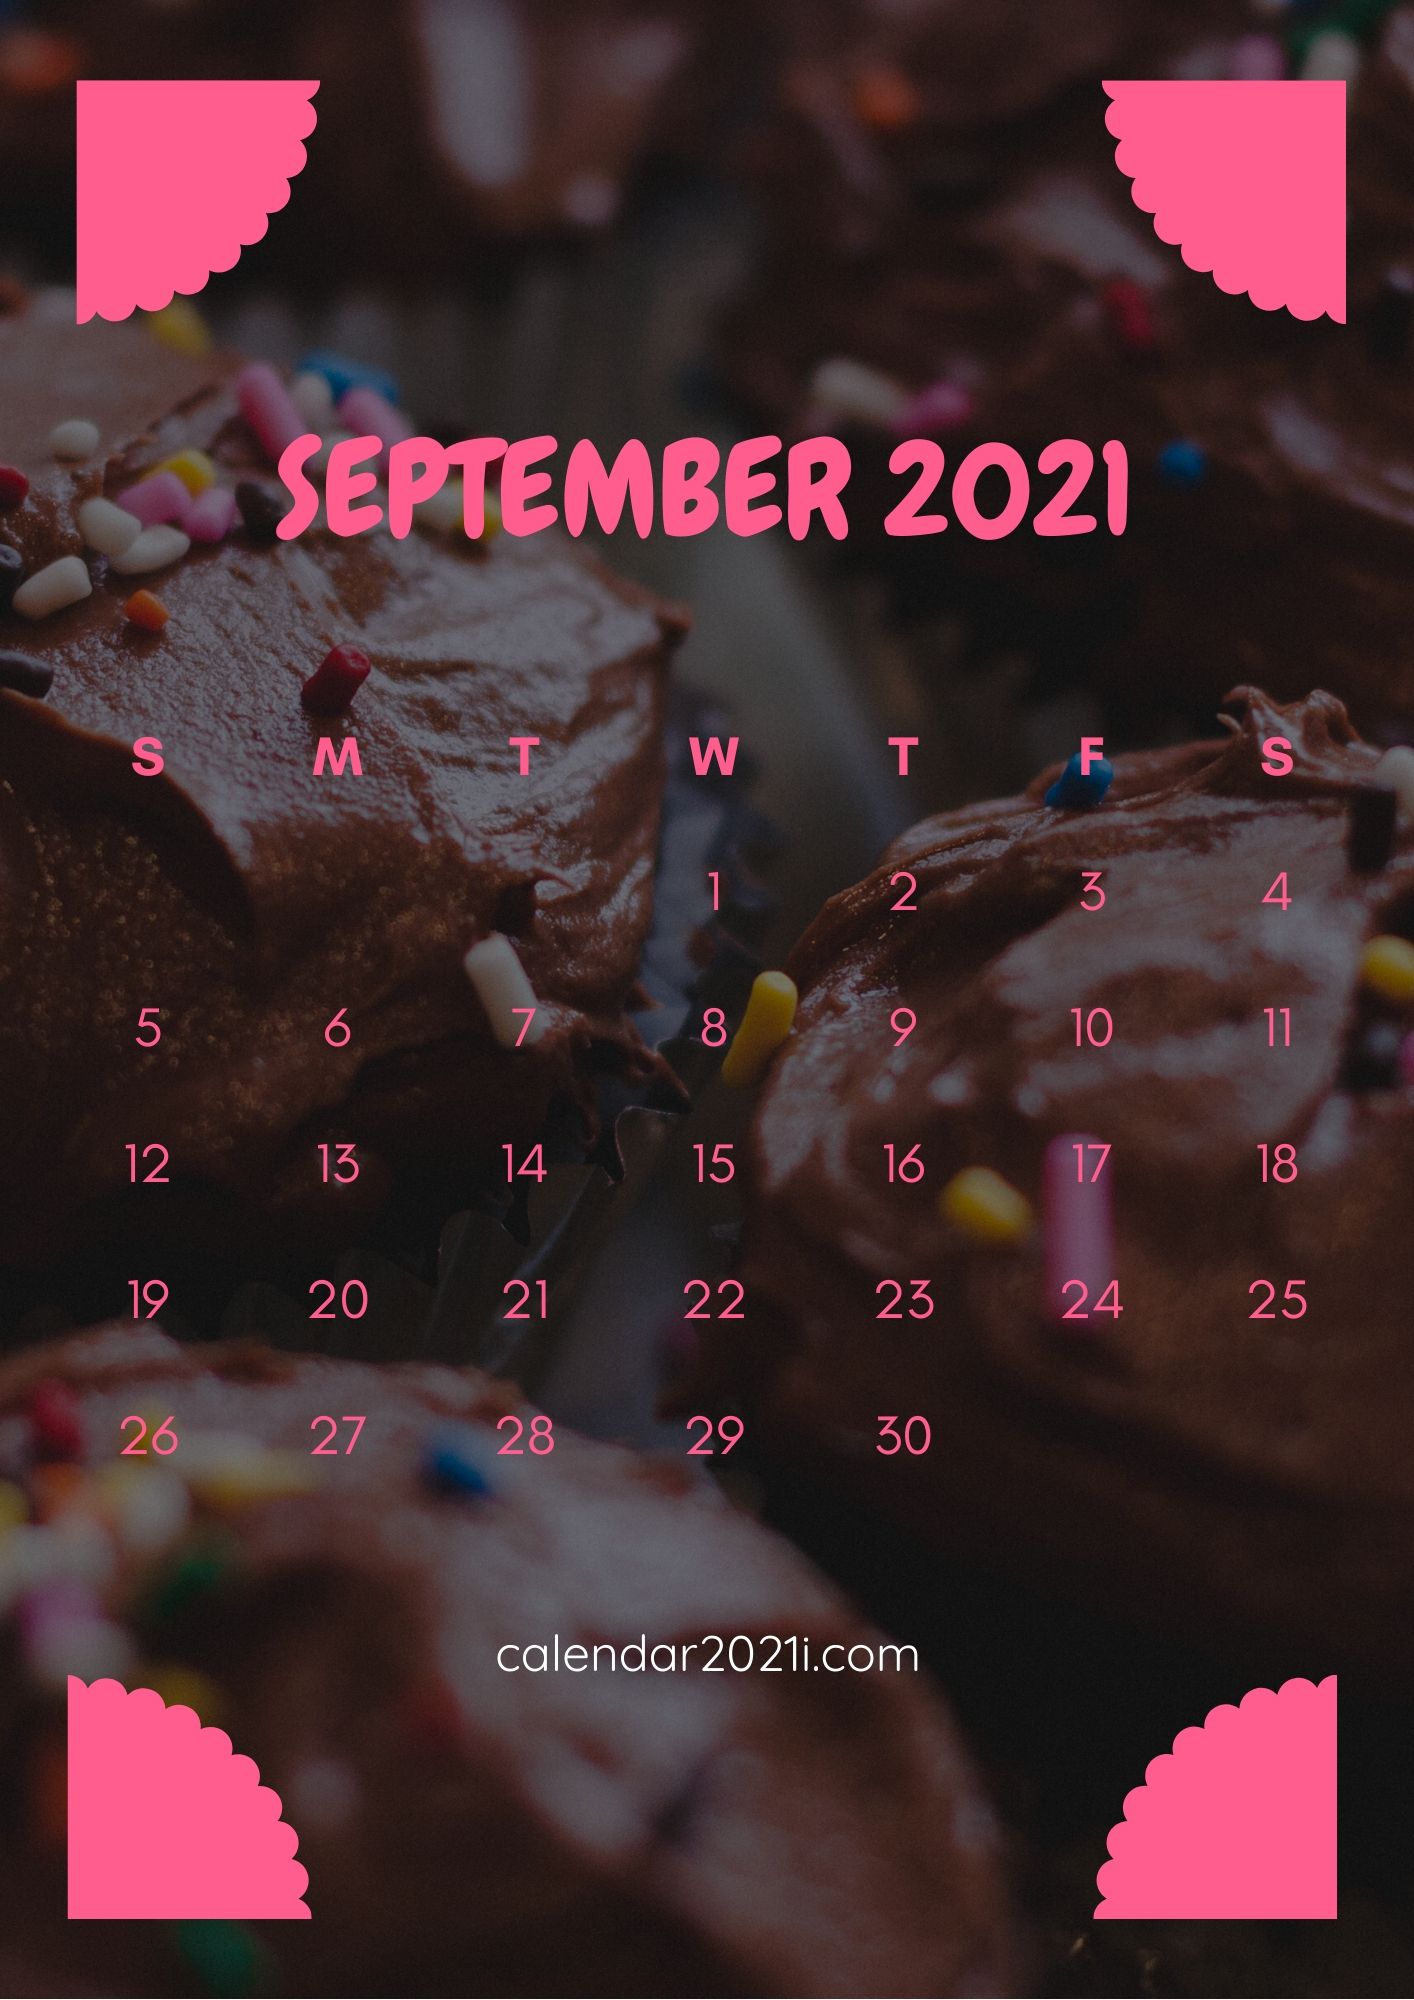 September 2021 iPhone Calendar Wallpaper